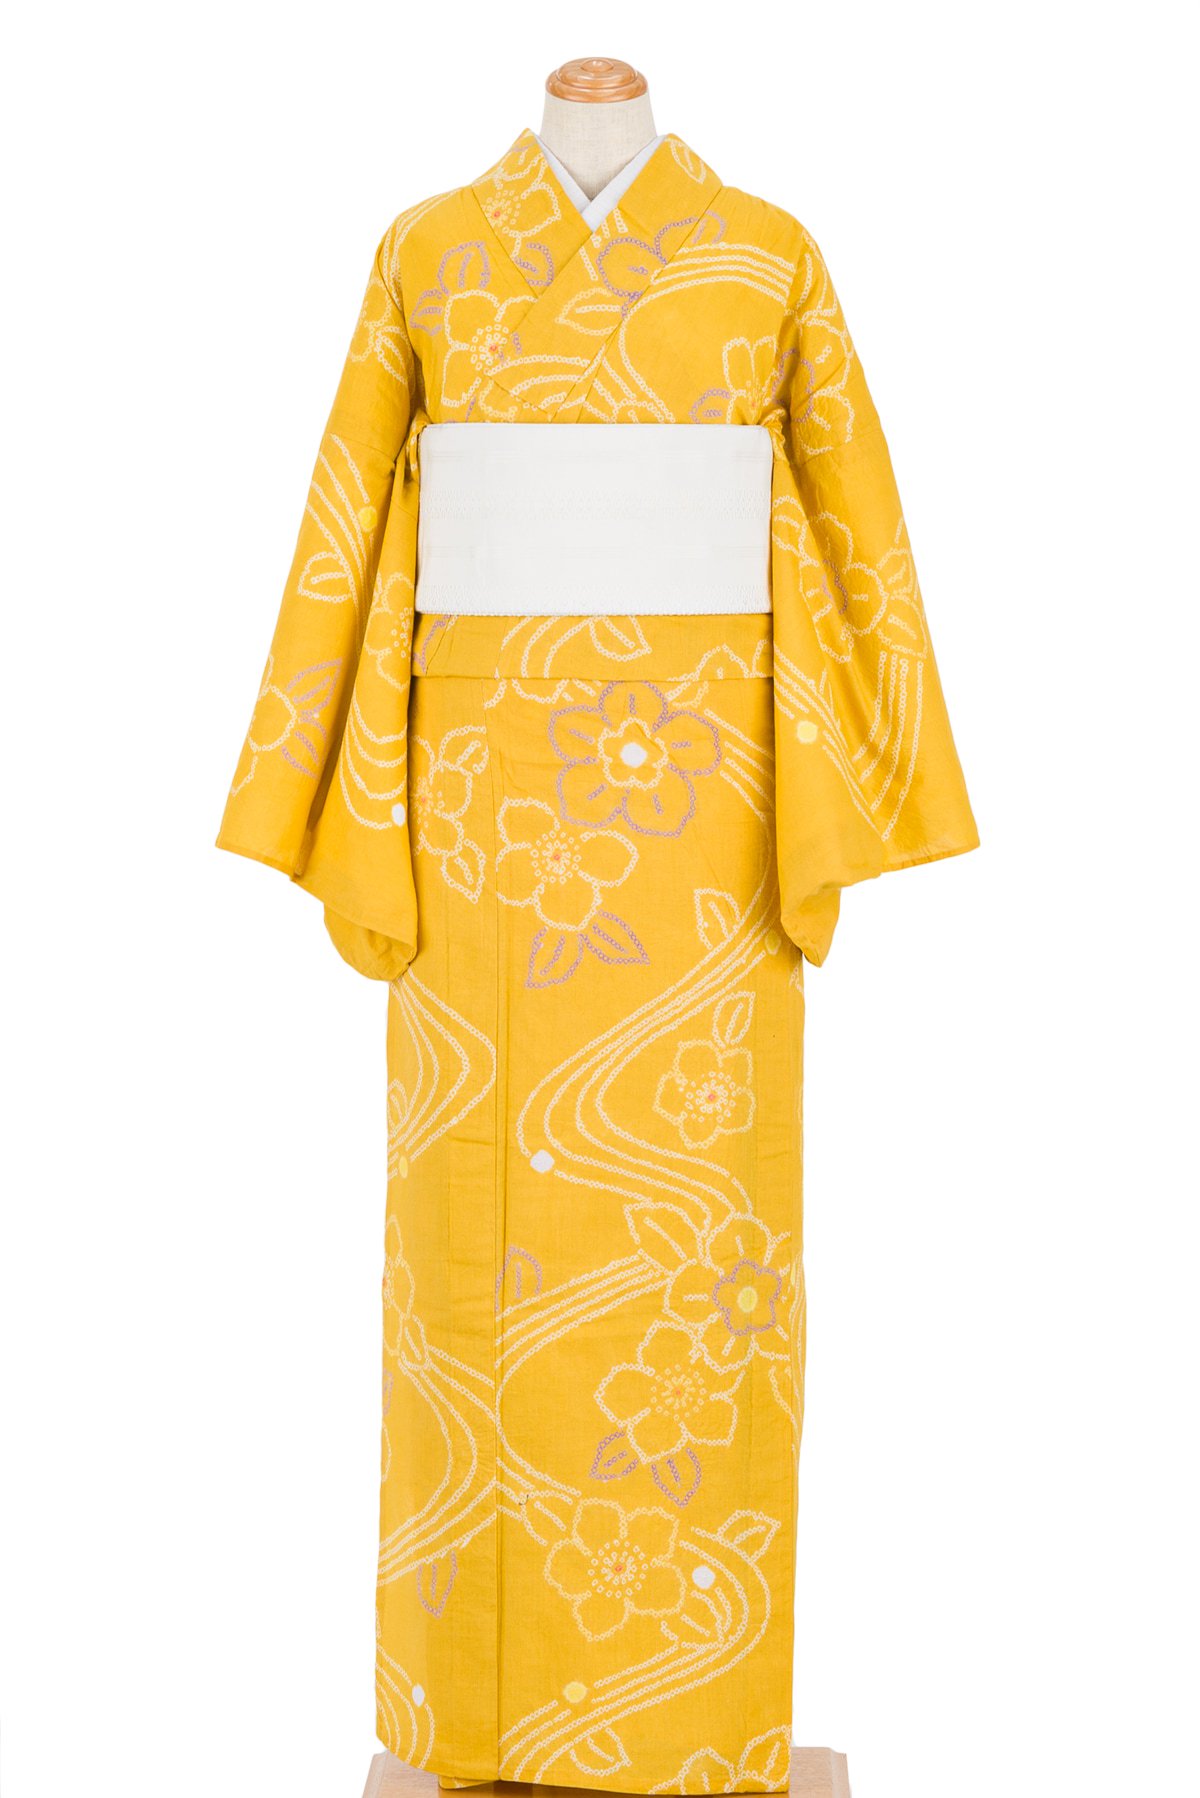 有松絞り浴衣 黄色 花流水 - からん::アンティーク着物・リサイクル